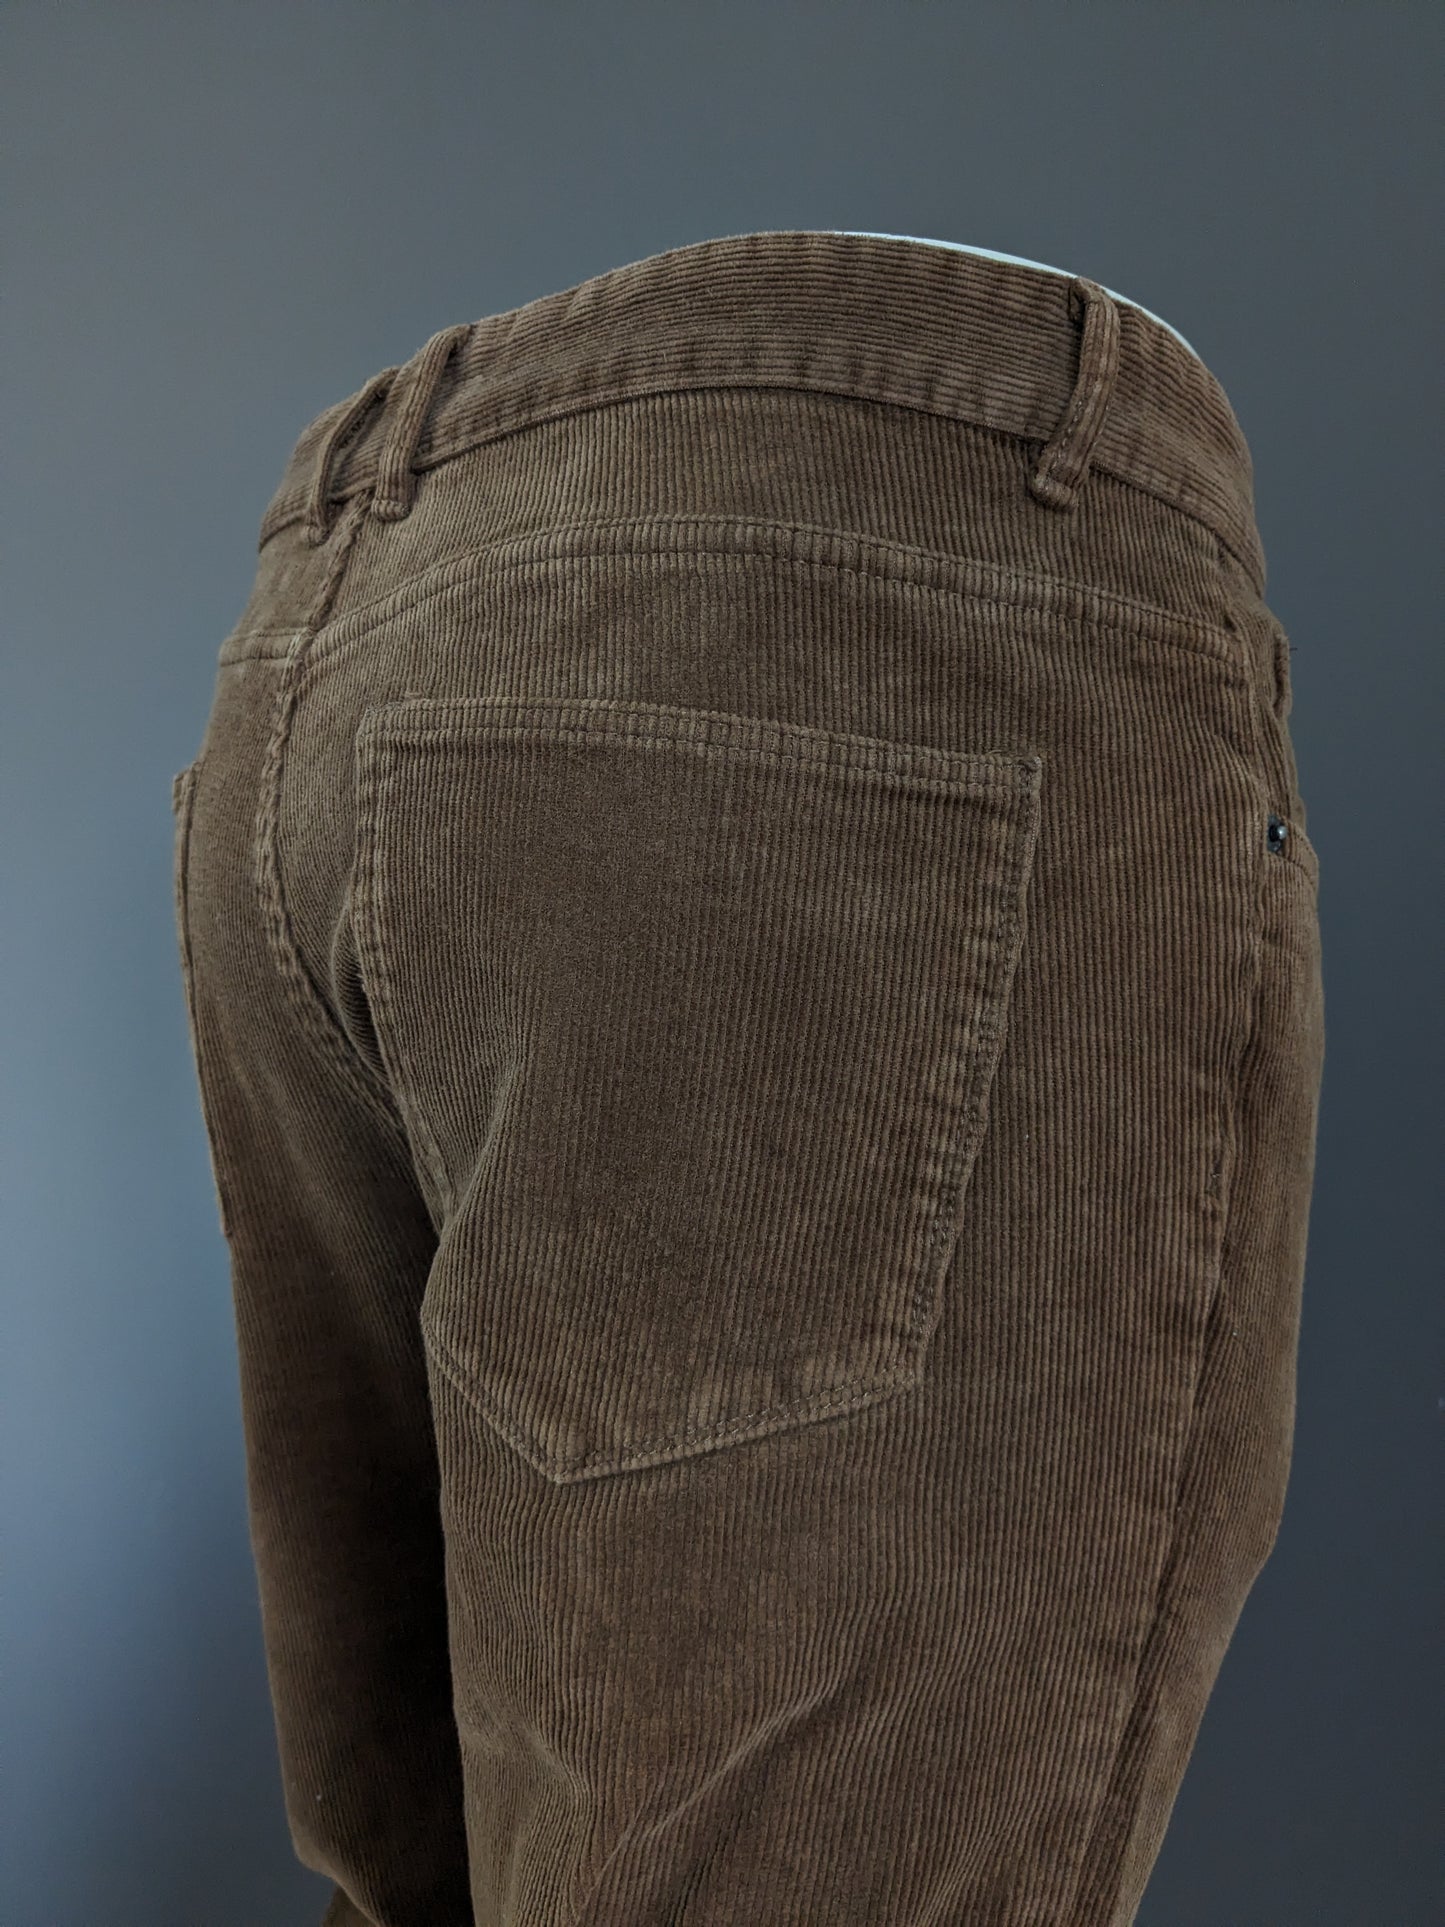 ACW 85 pantalones de costilla. Marrón. Tamaño W34 - L24. Modelo corto. Corte recto.